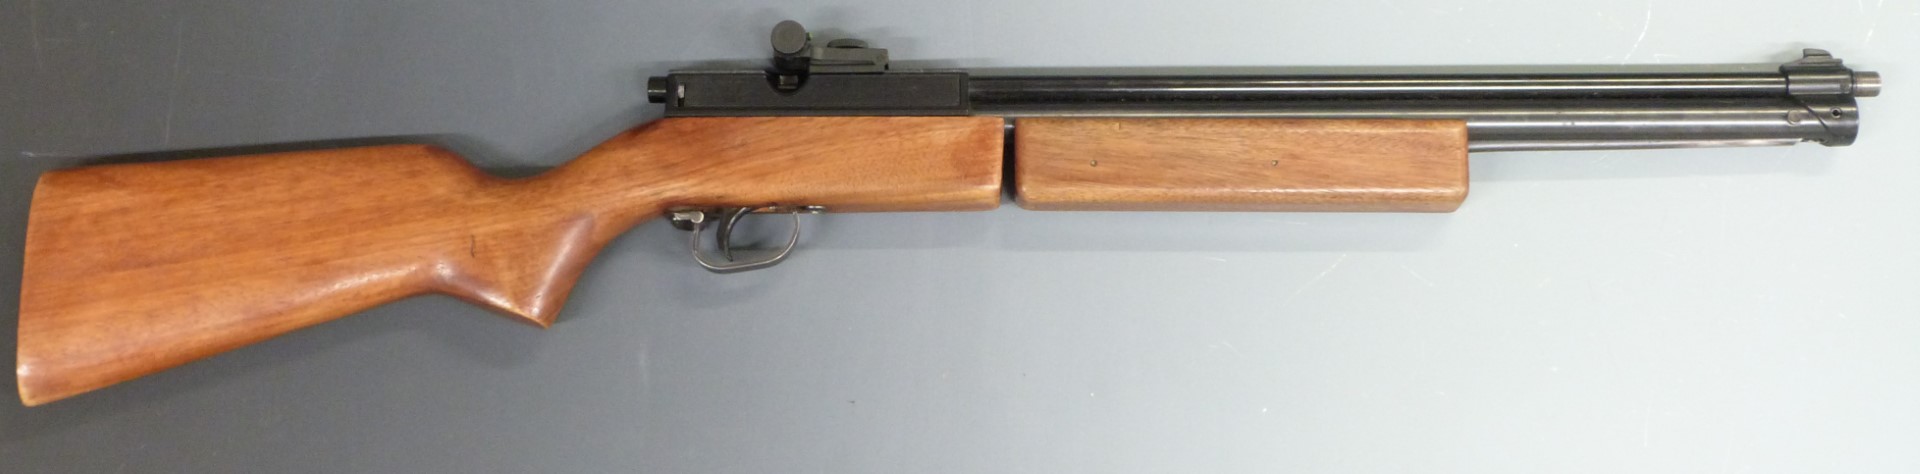 Sharp Innova II Japanese .22 air rifle with semi-pistol grip, adjustable trigger and adjustable